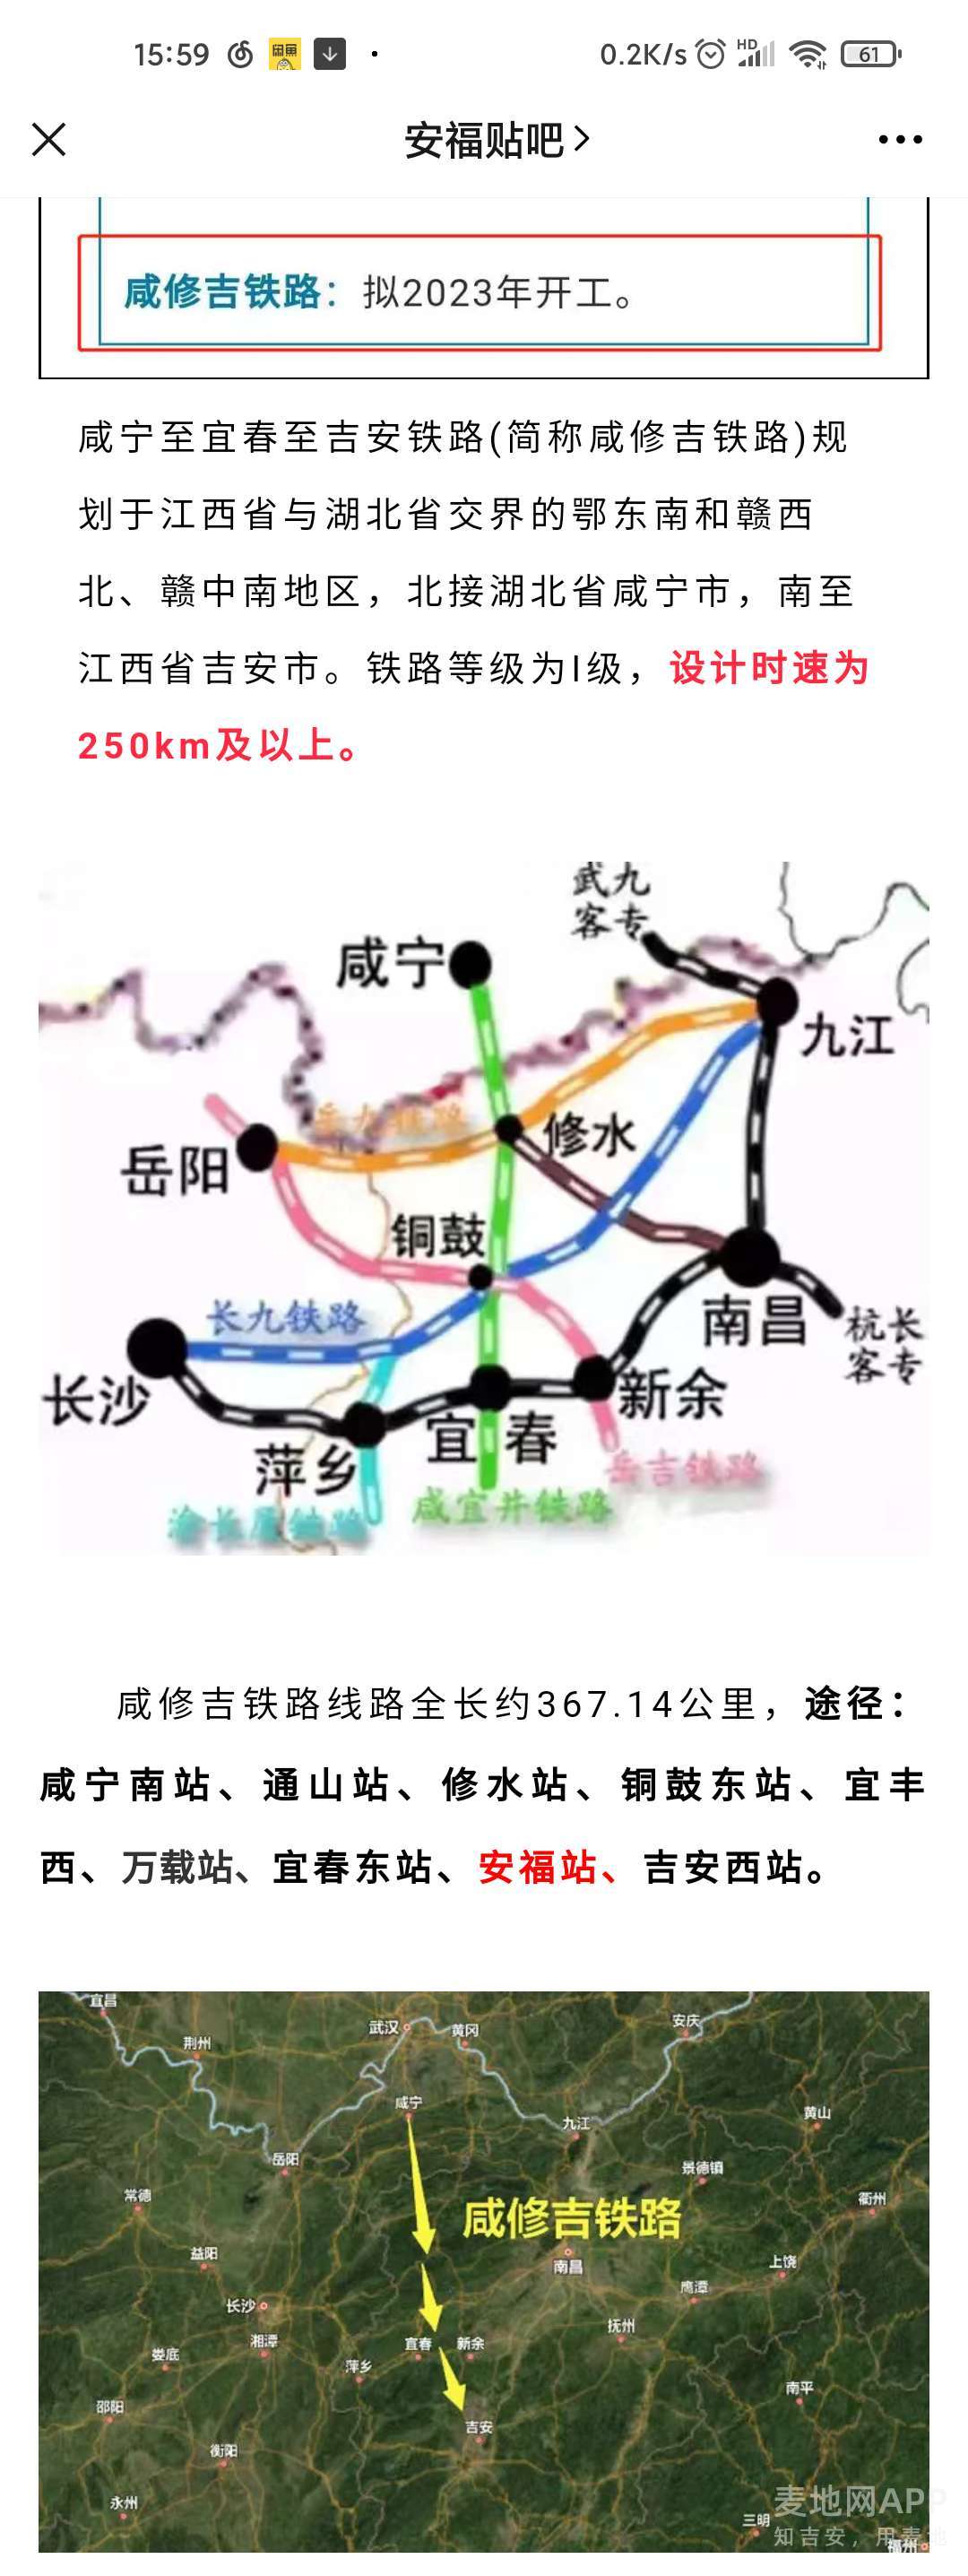 咸修吉铁路2023开工